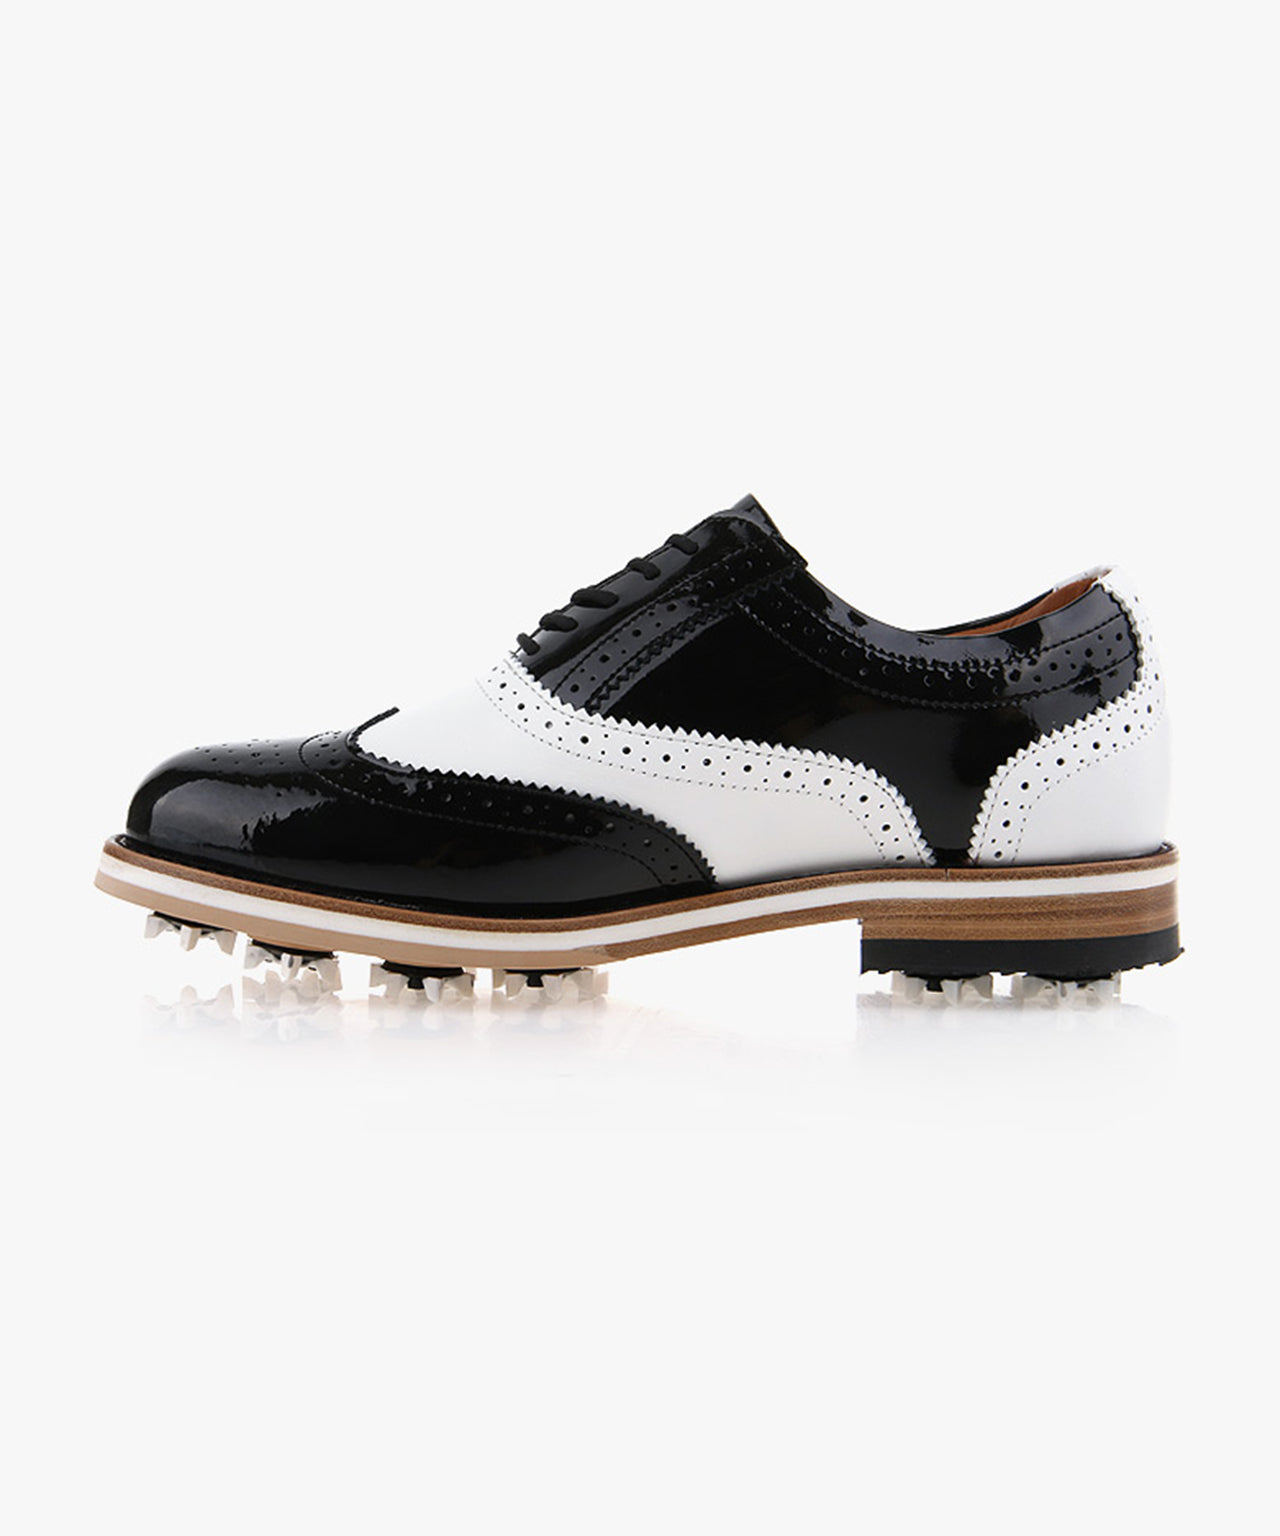 HENRY STUART My Suit Classic Men's/Women's Spike Golf Shoes 102 - Black